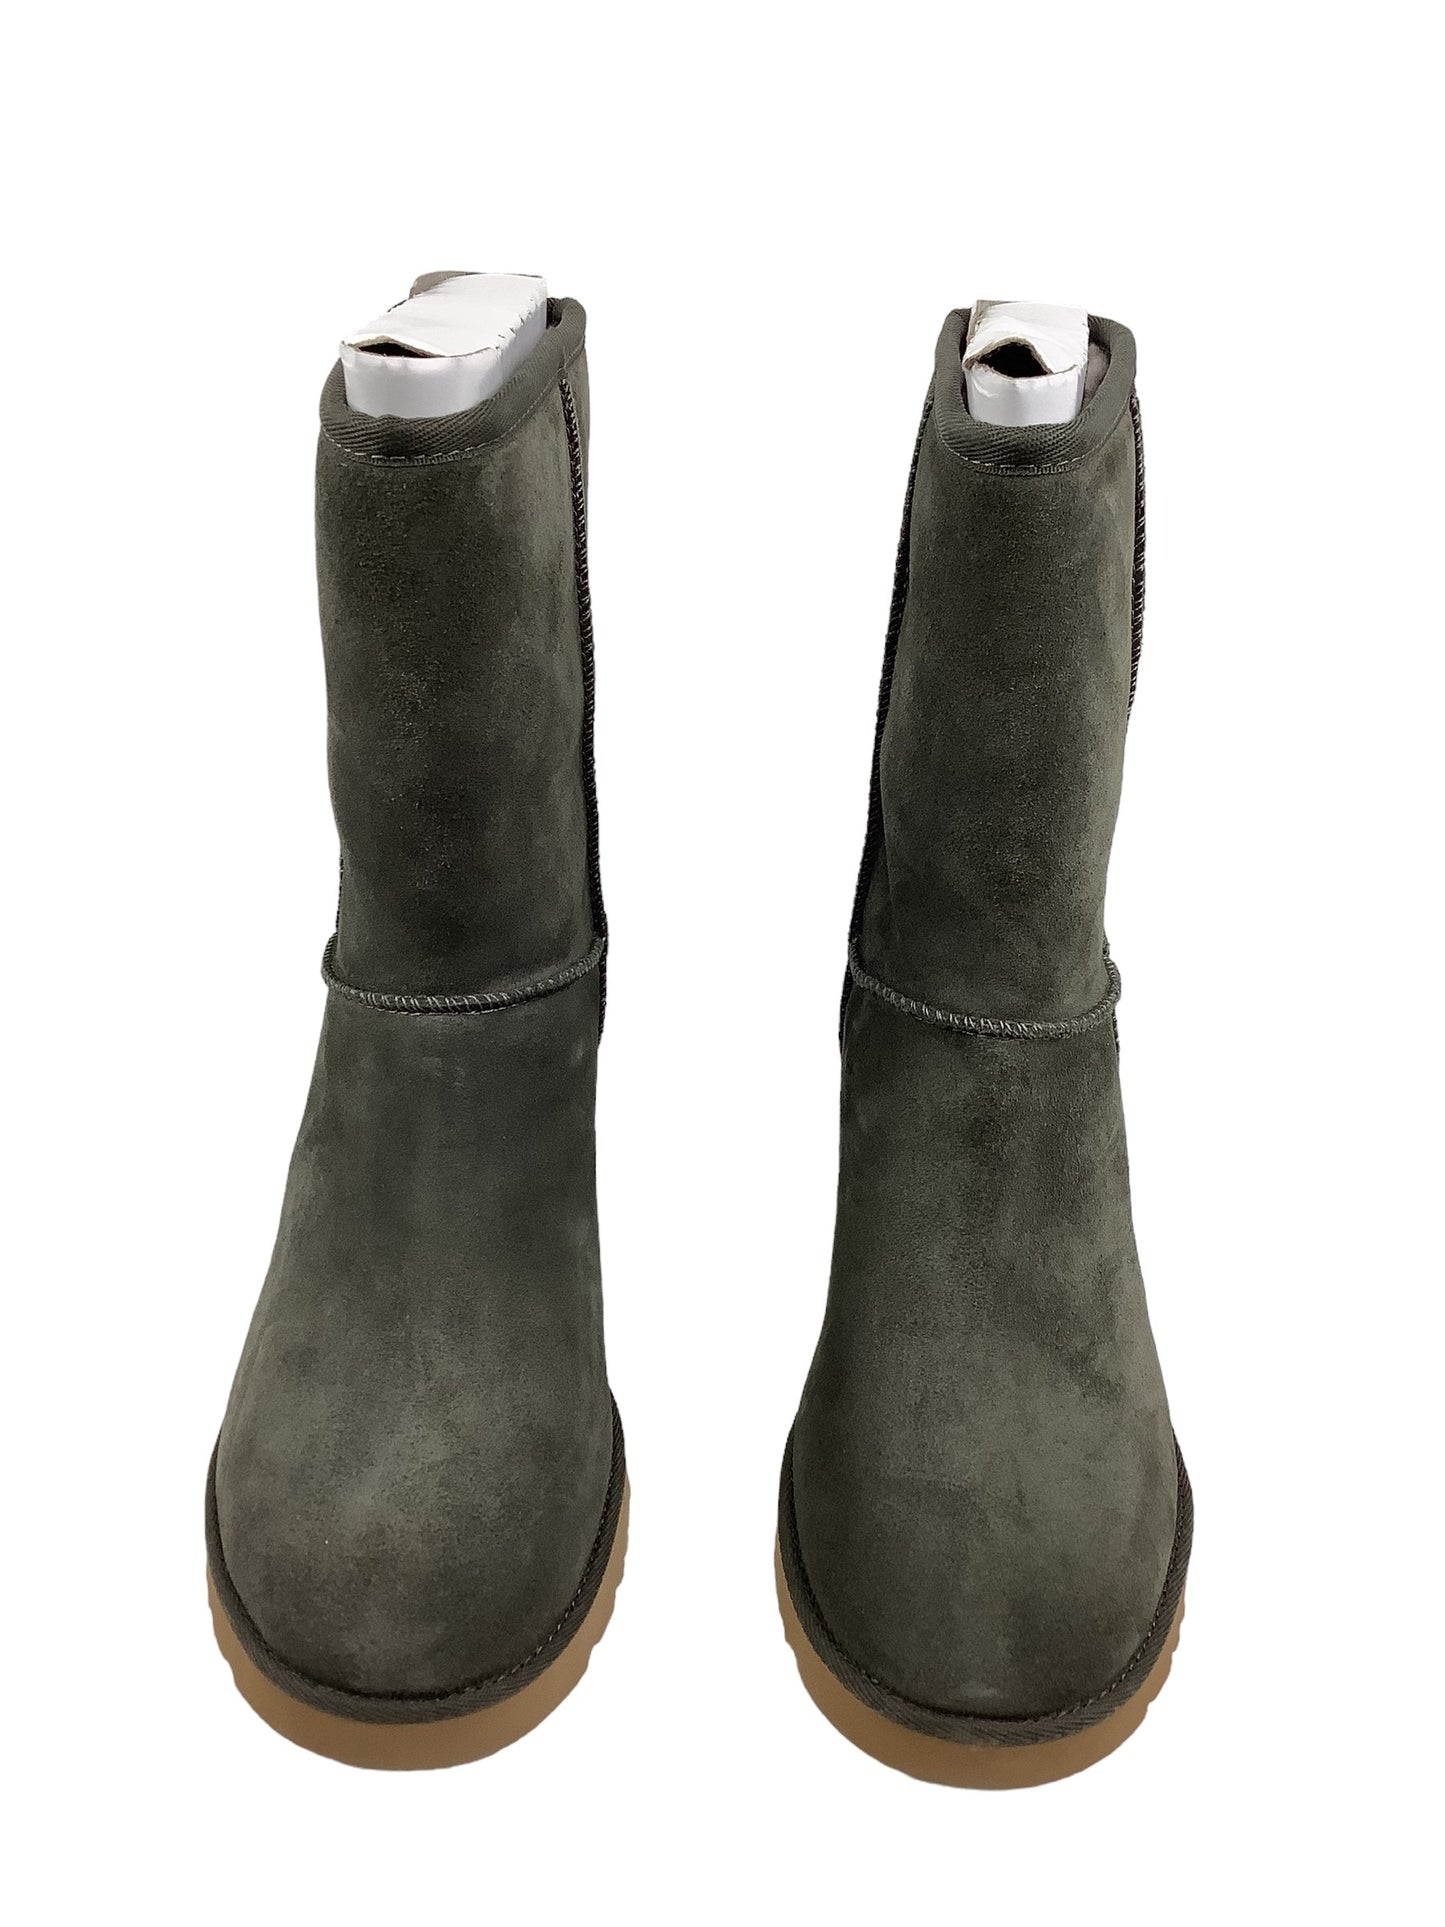 Grey Boots Designer Ugg, Size 8